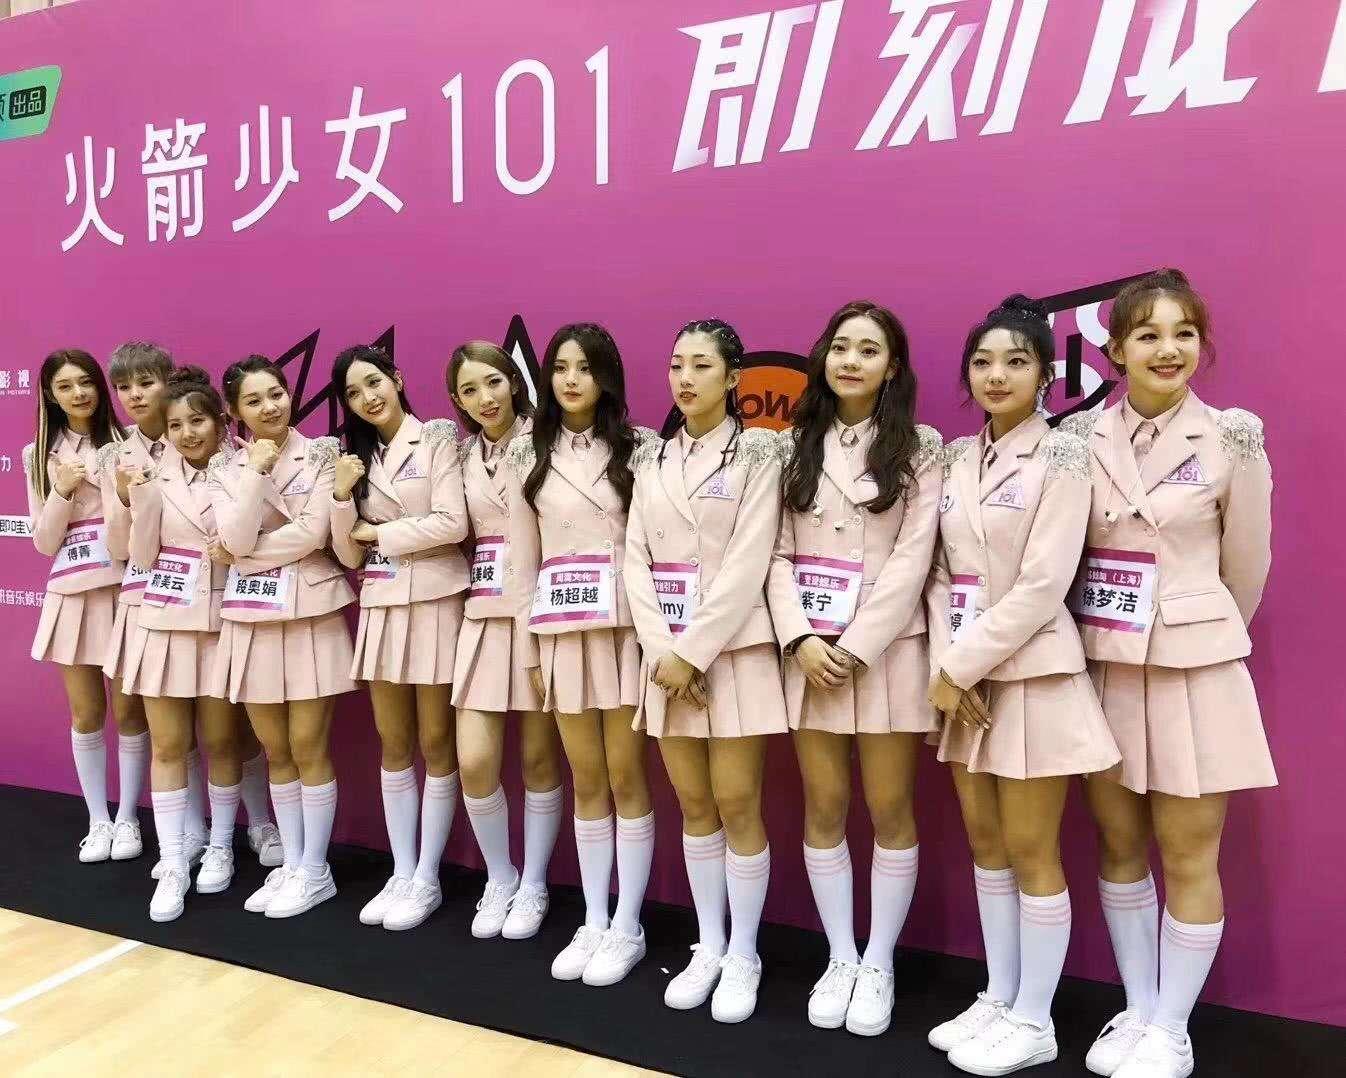 孟美岐,吴宣仪等11名小姐姐组成的"火箭少女101"女团,也宣布正式出道